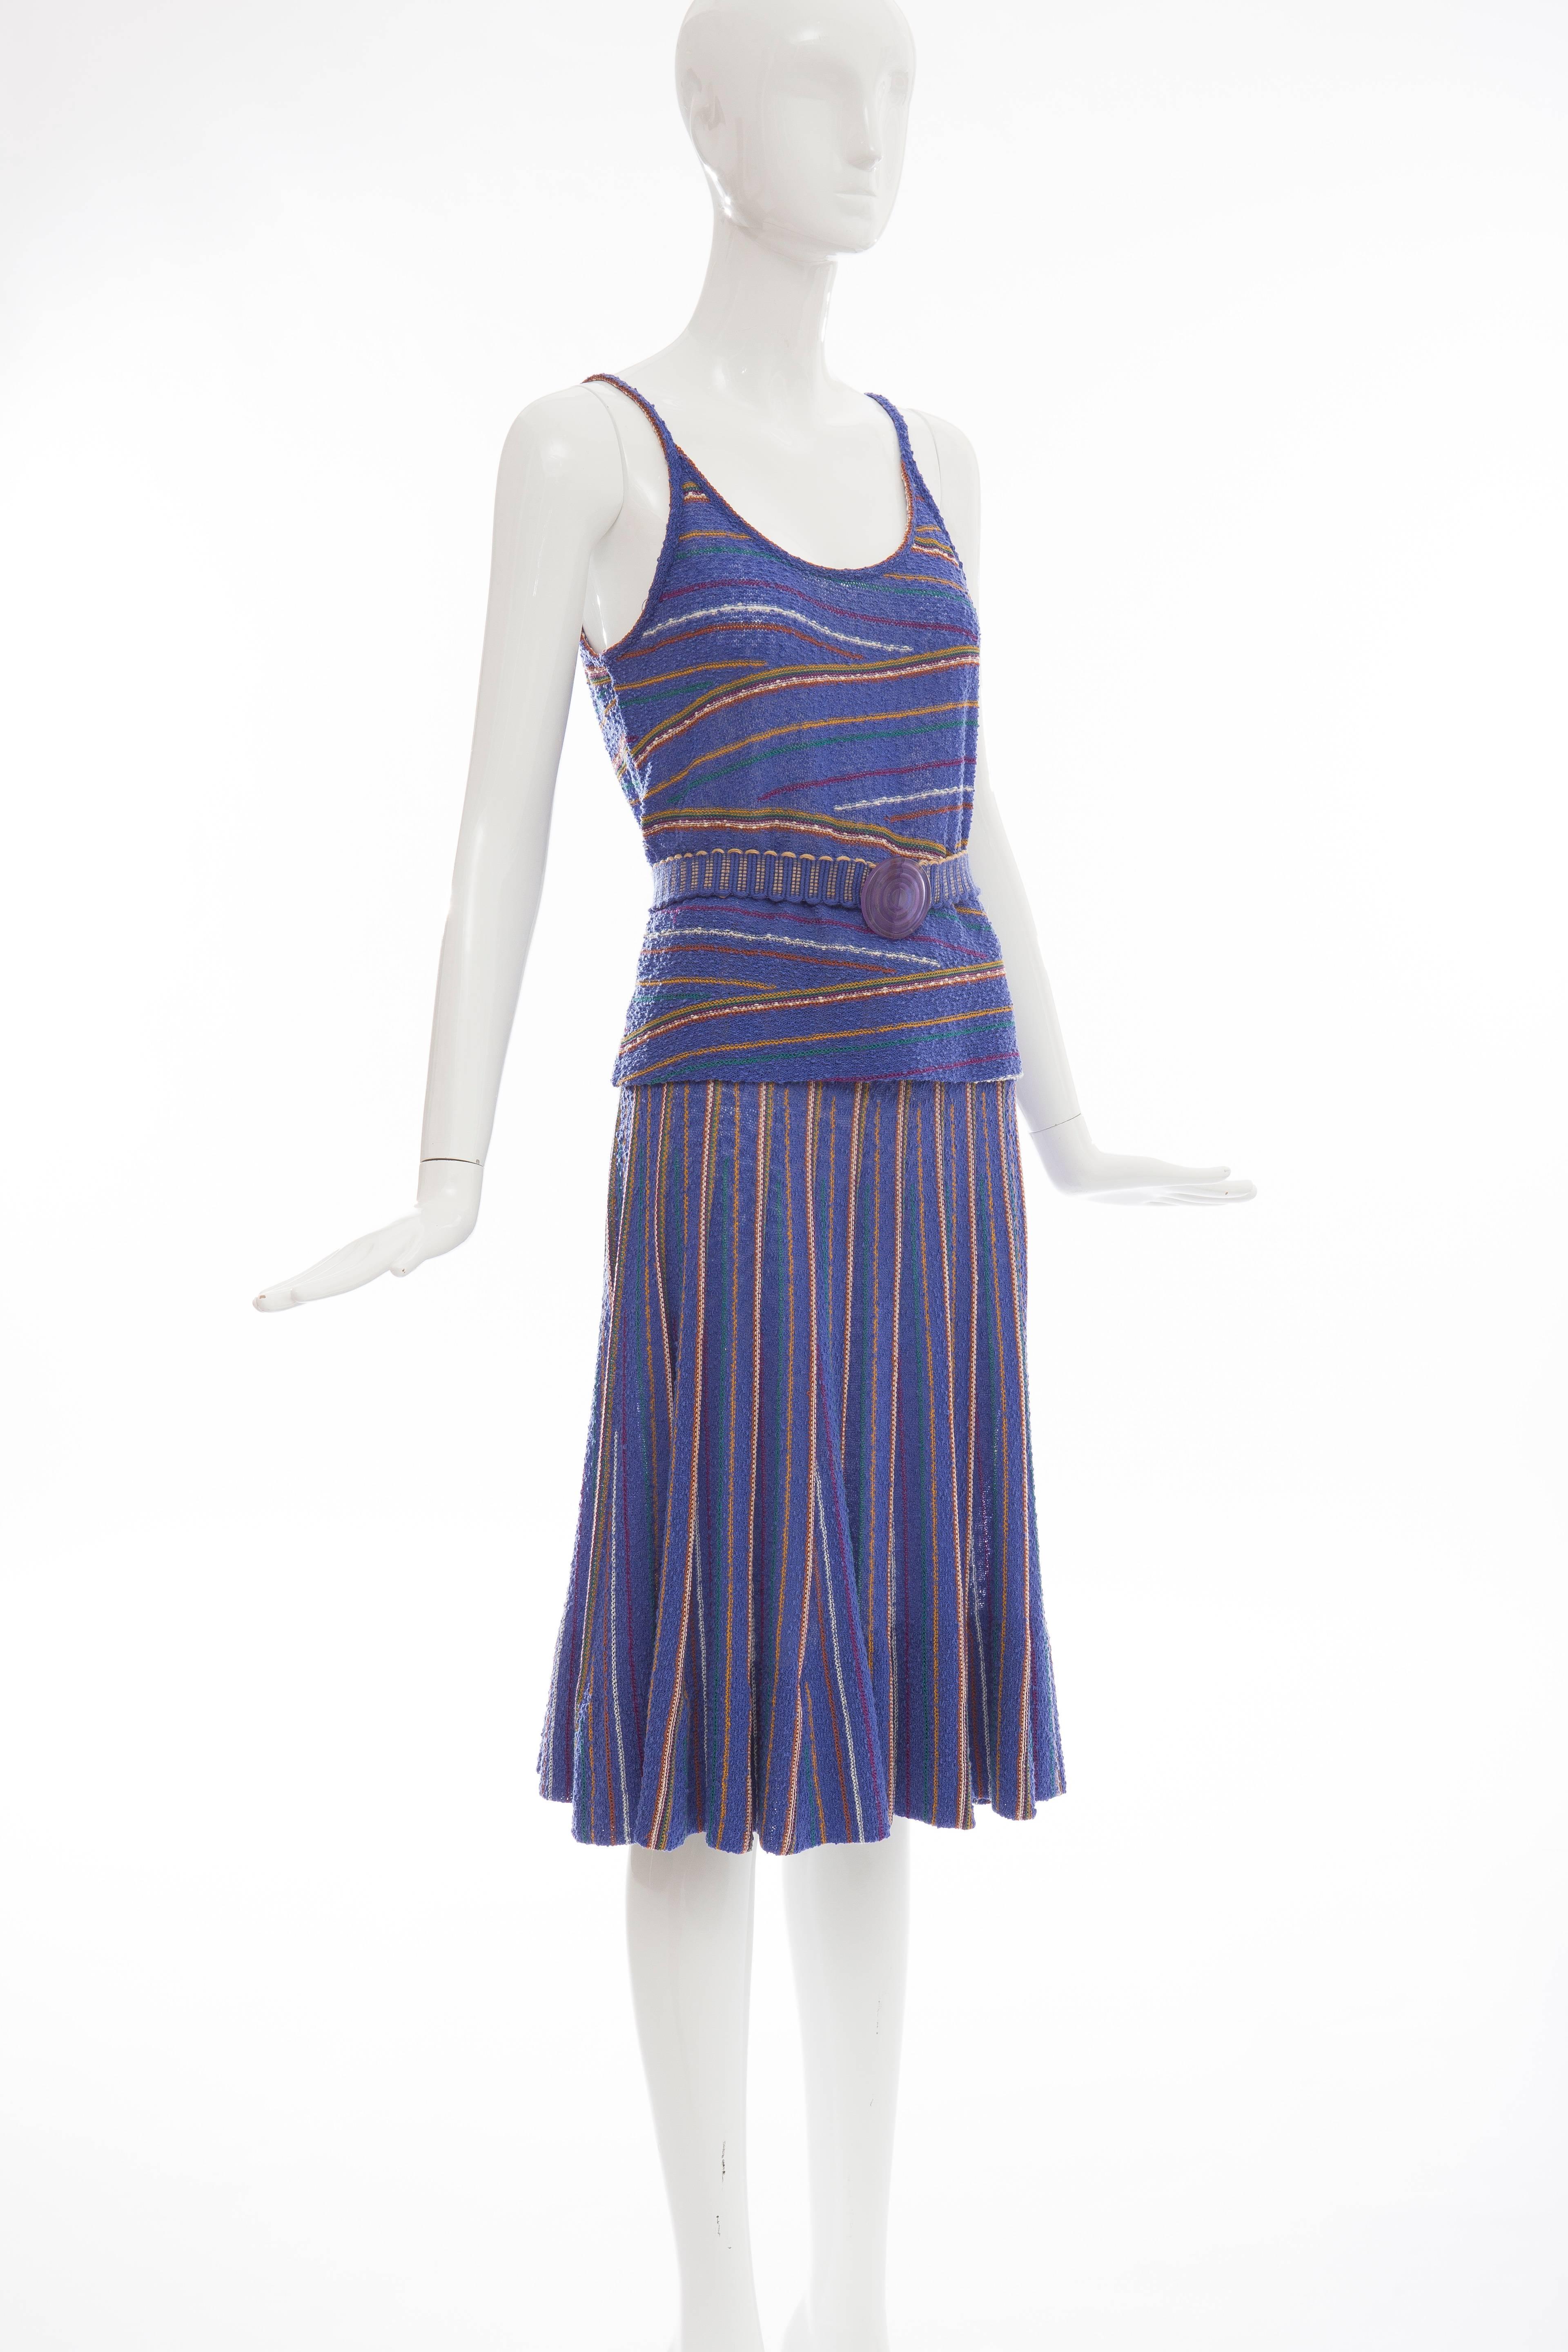 Missoni For Bonwit Teller Wool Nylon Linen Knit Skirt Suit,  Circa 1970s 2